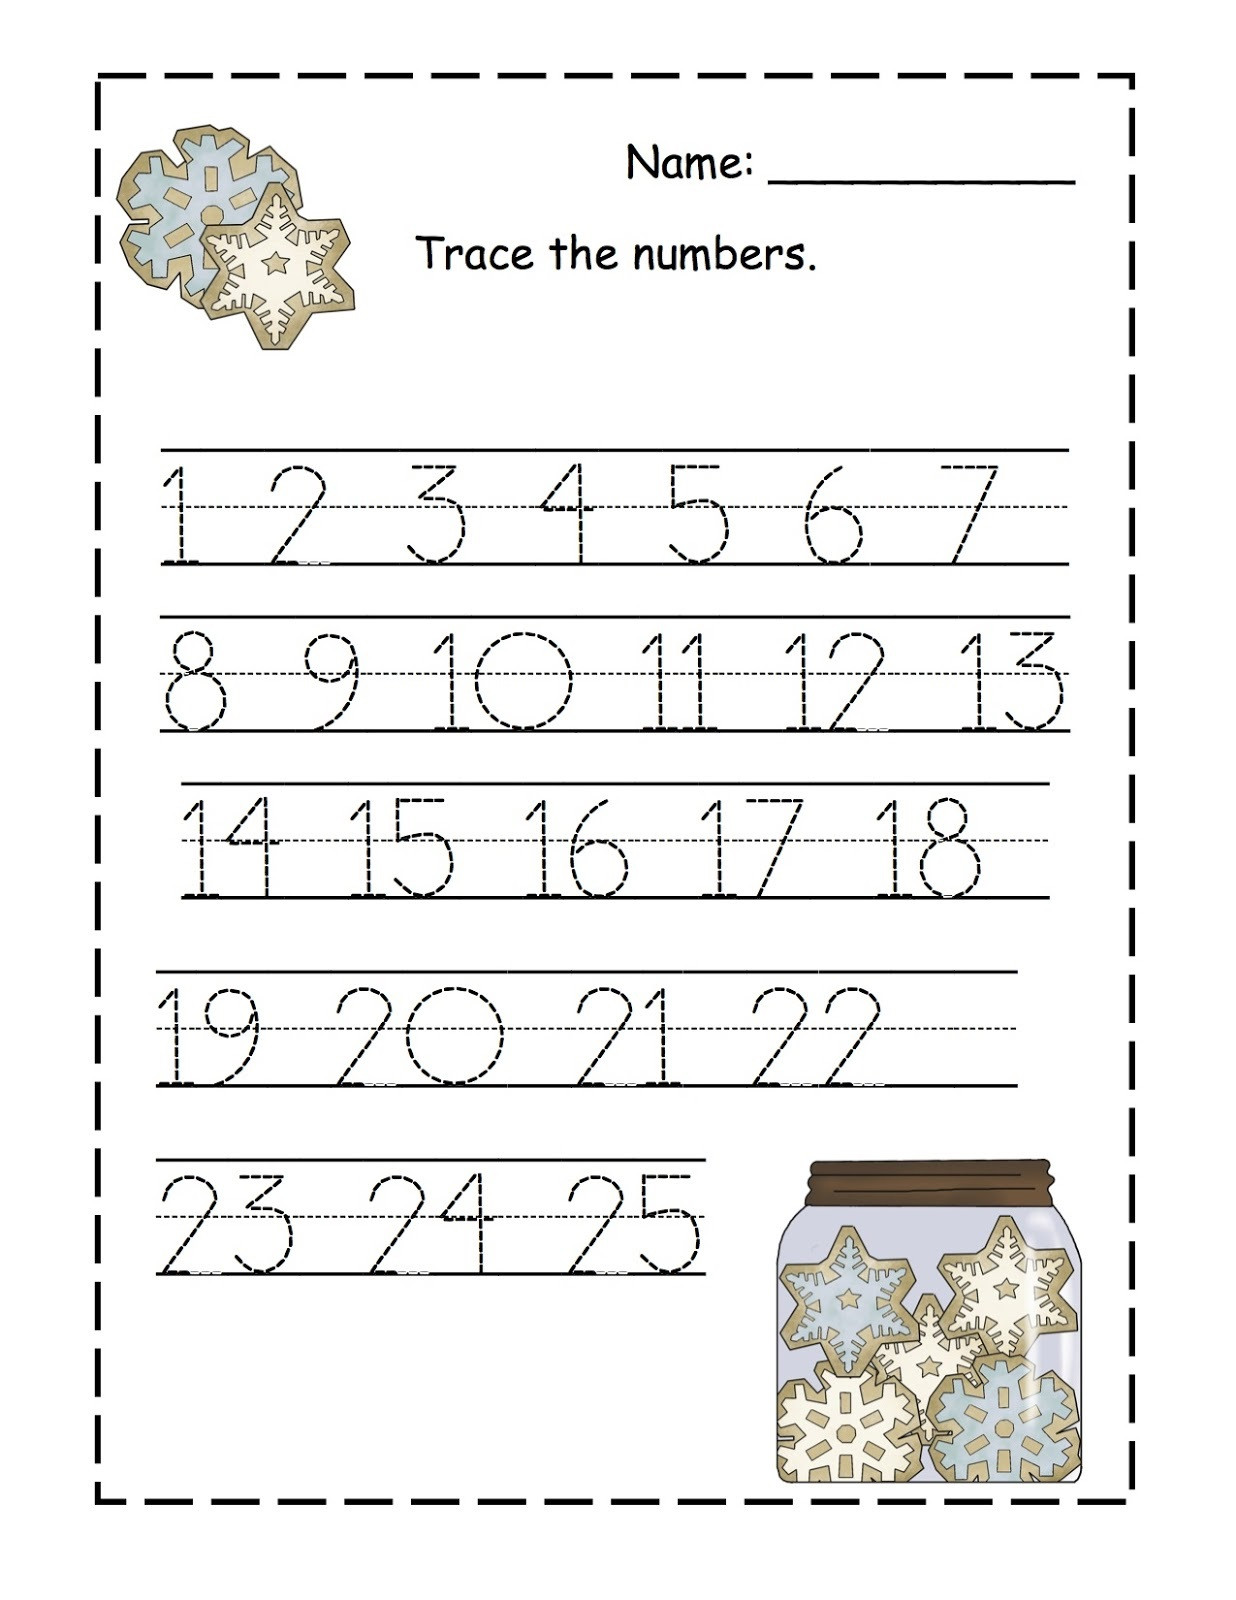 Free Printable Number Tracing Worksheets Preschool Number Tracing Worksheets Free Printable Clover